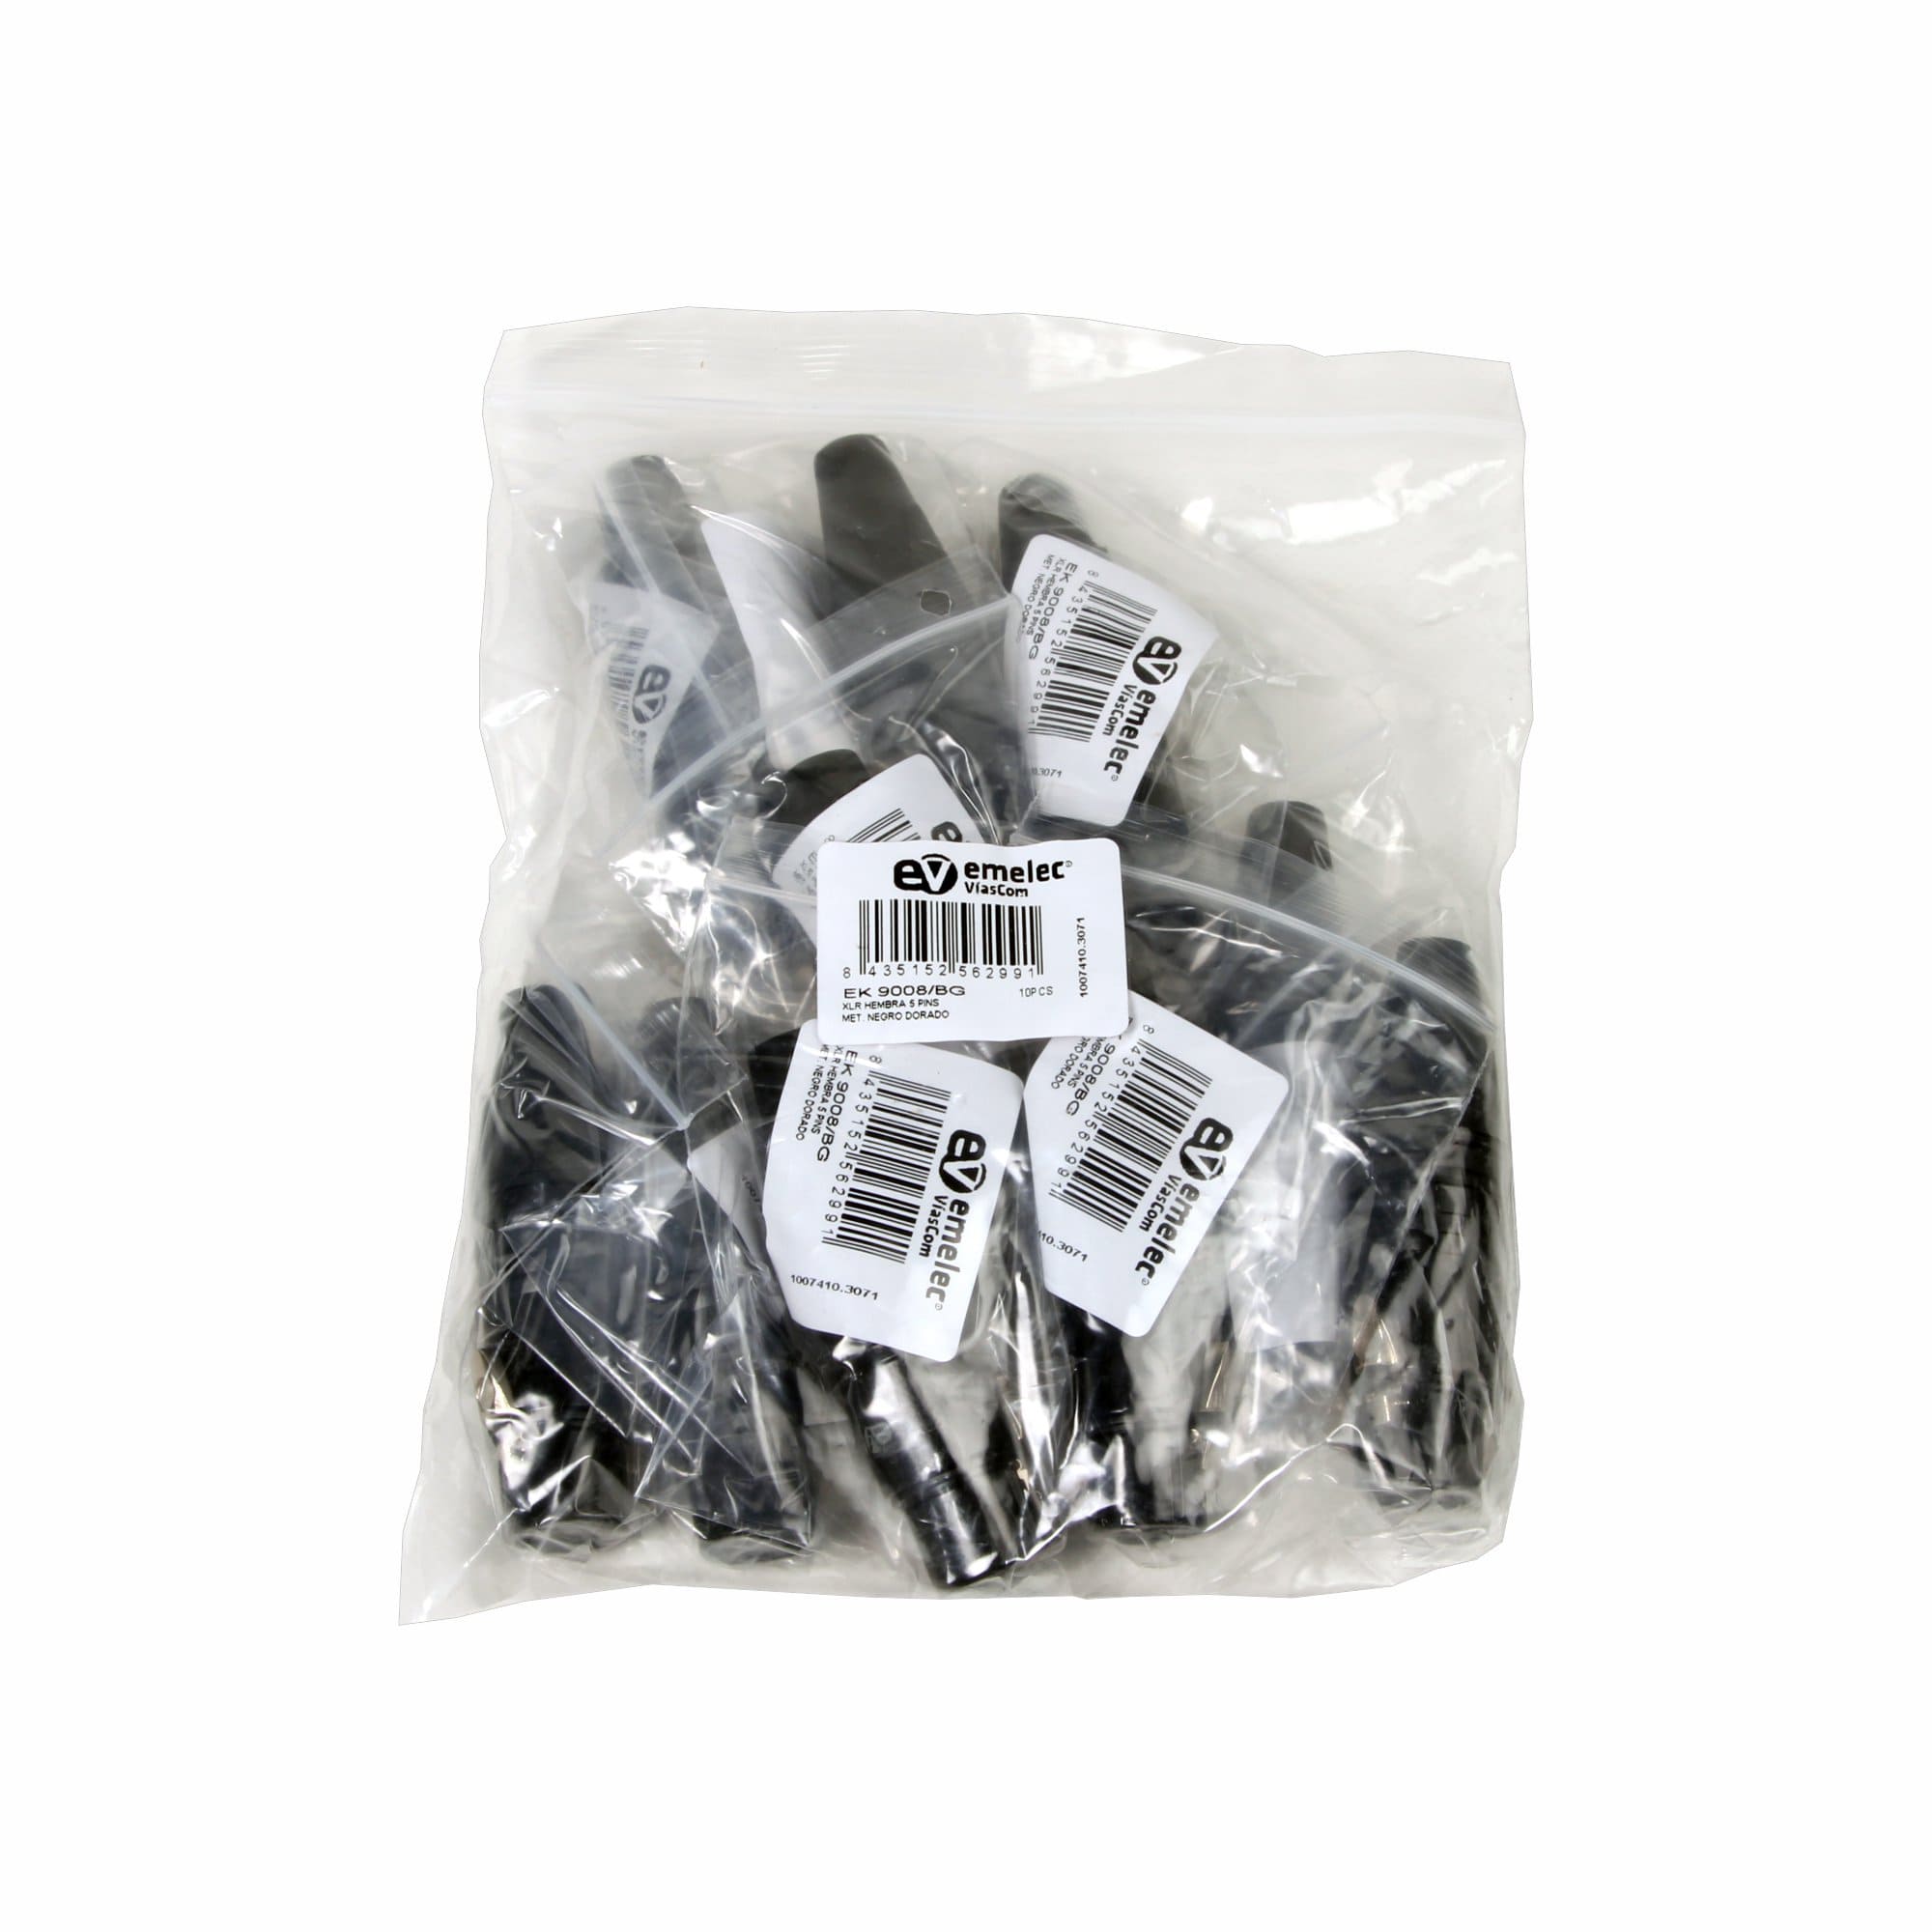 Sachet en plastique contenant 10 connecteurs XLR femelles noirs à 5 broches de Emelec ViaCom